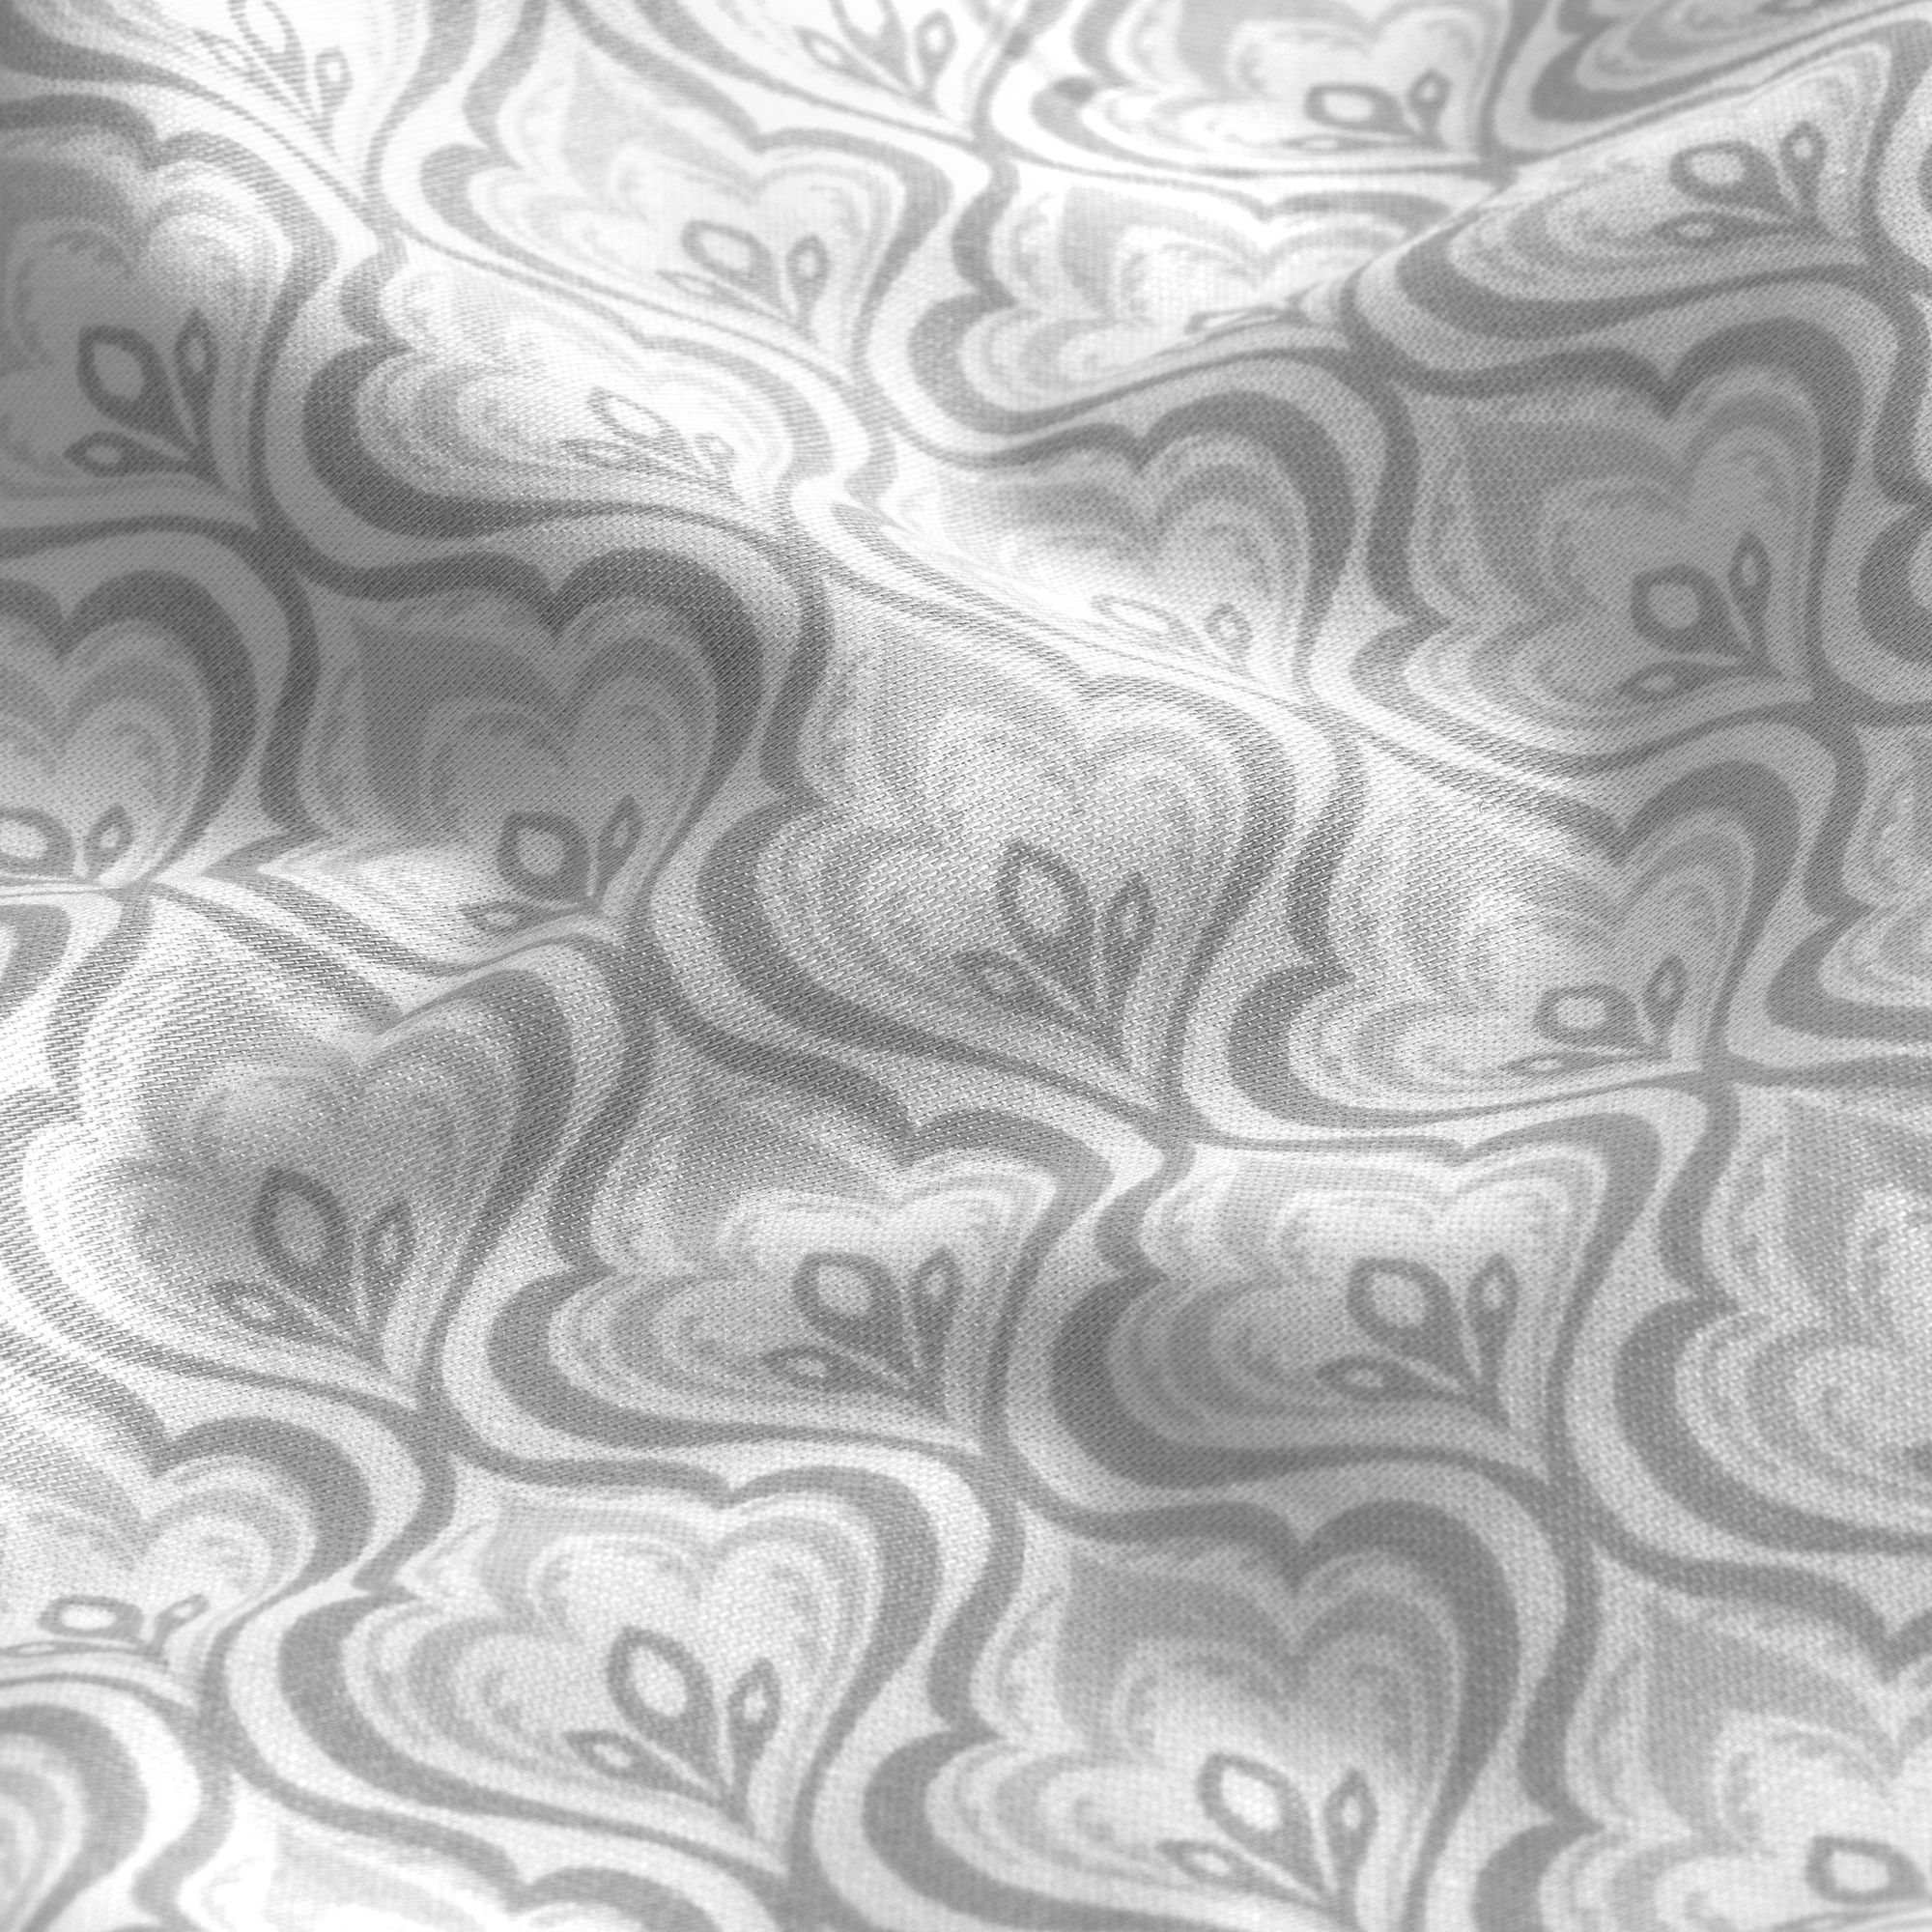 Комплект постельного белья Togas Коссоно серый Двуспальный кинг сайз, размер Кинг сайз - фото 13